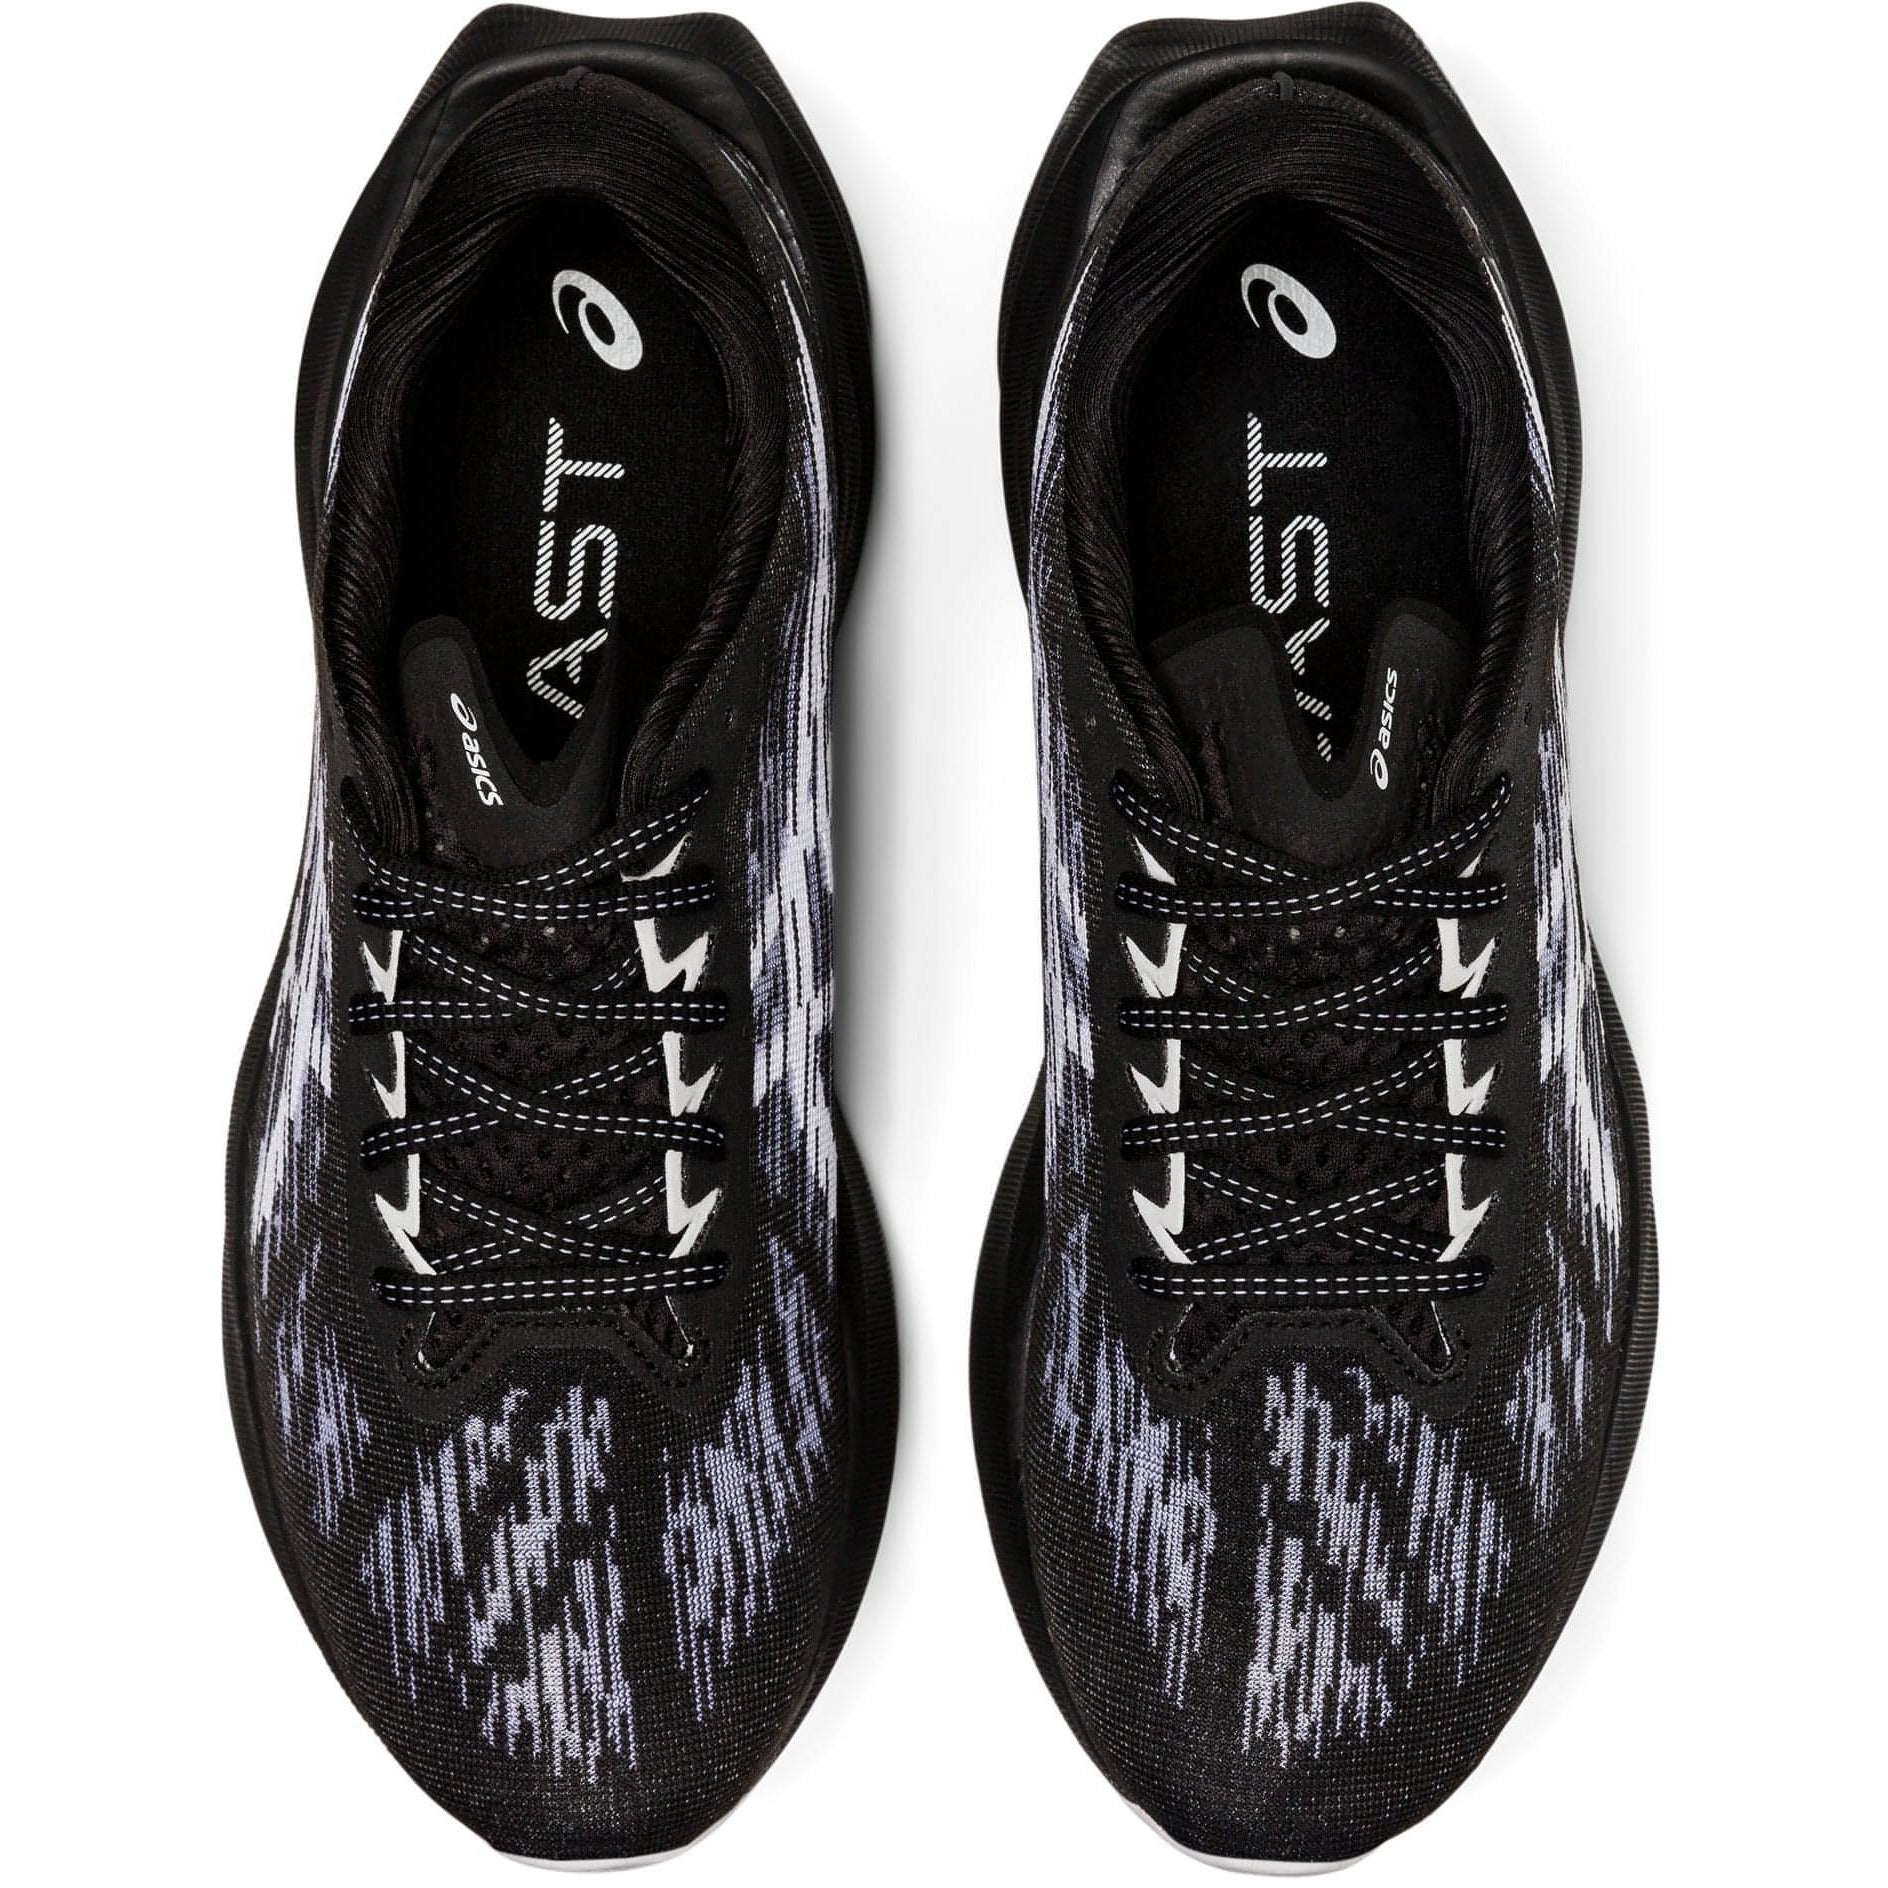 Men's NOVABLAST 3, Black/White, Running Shoes